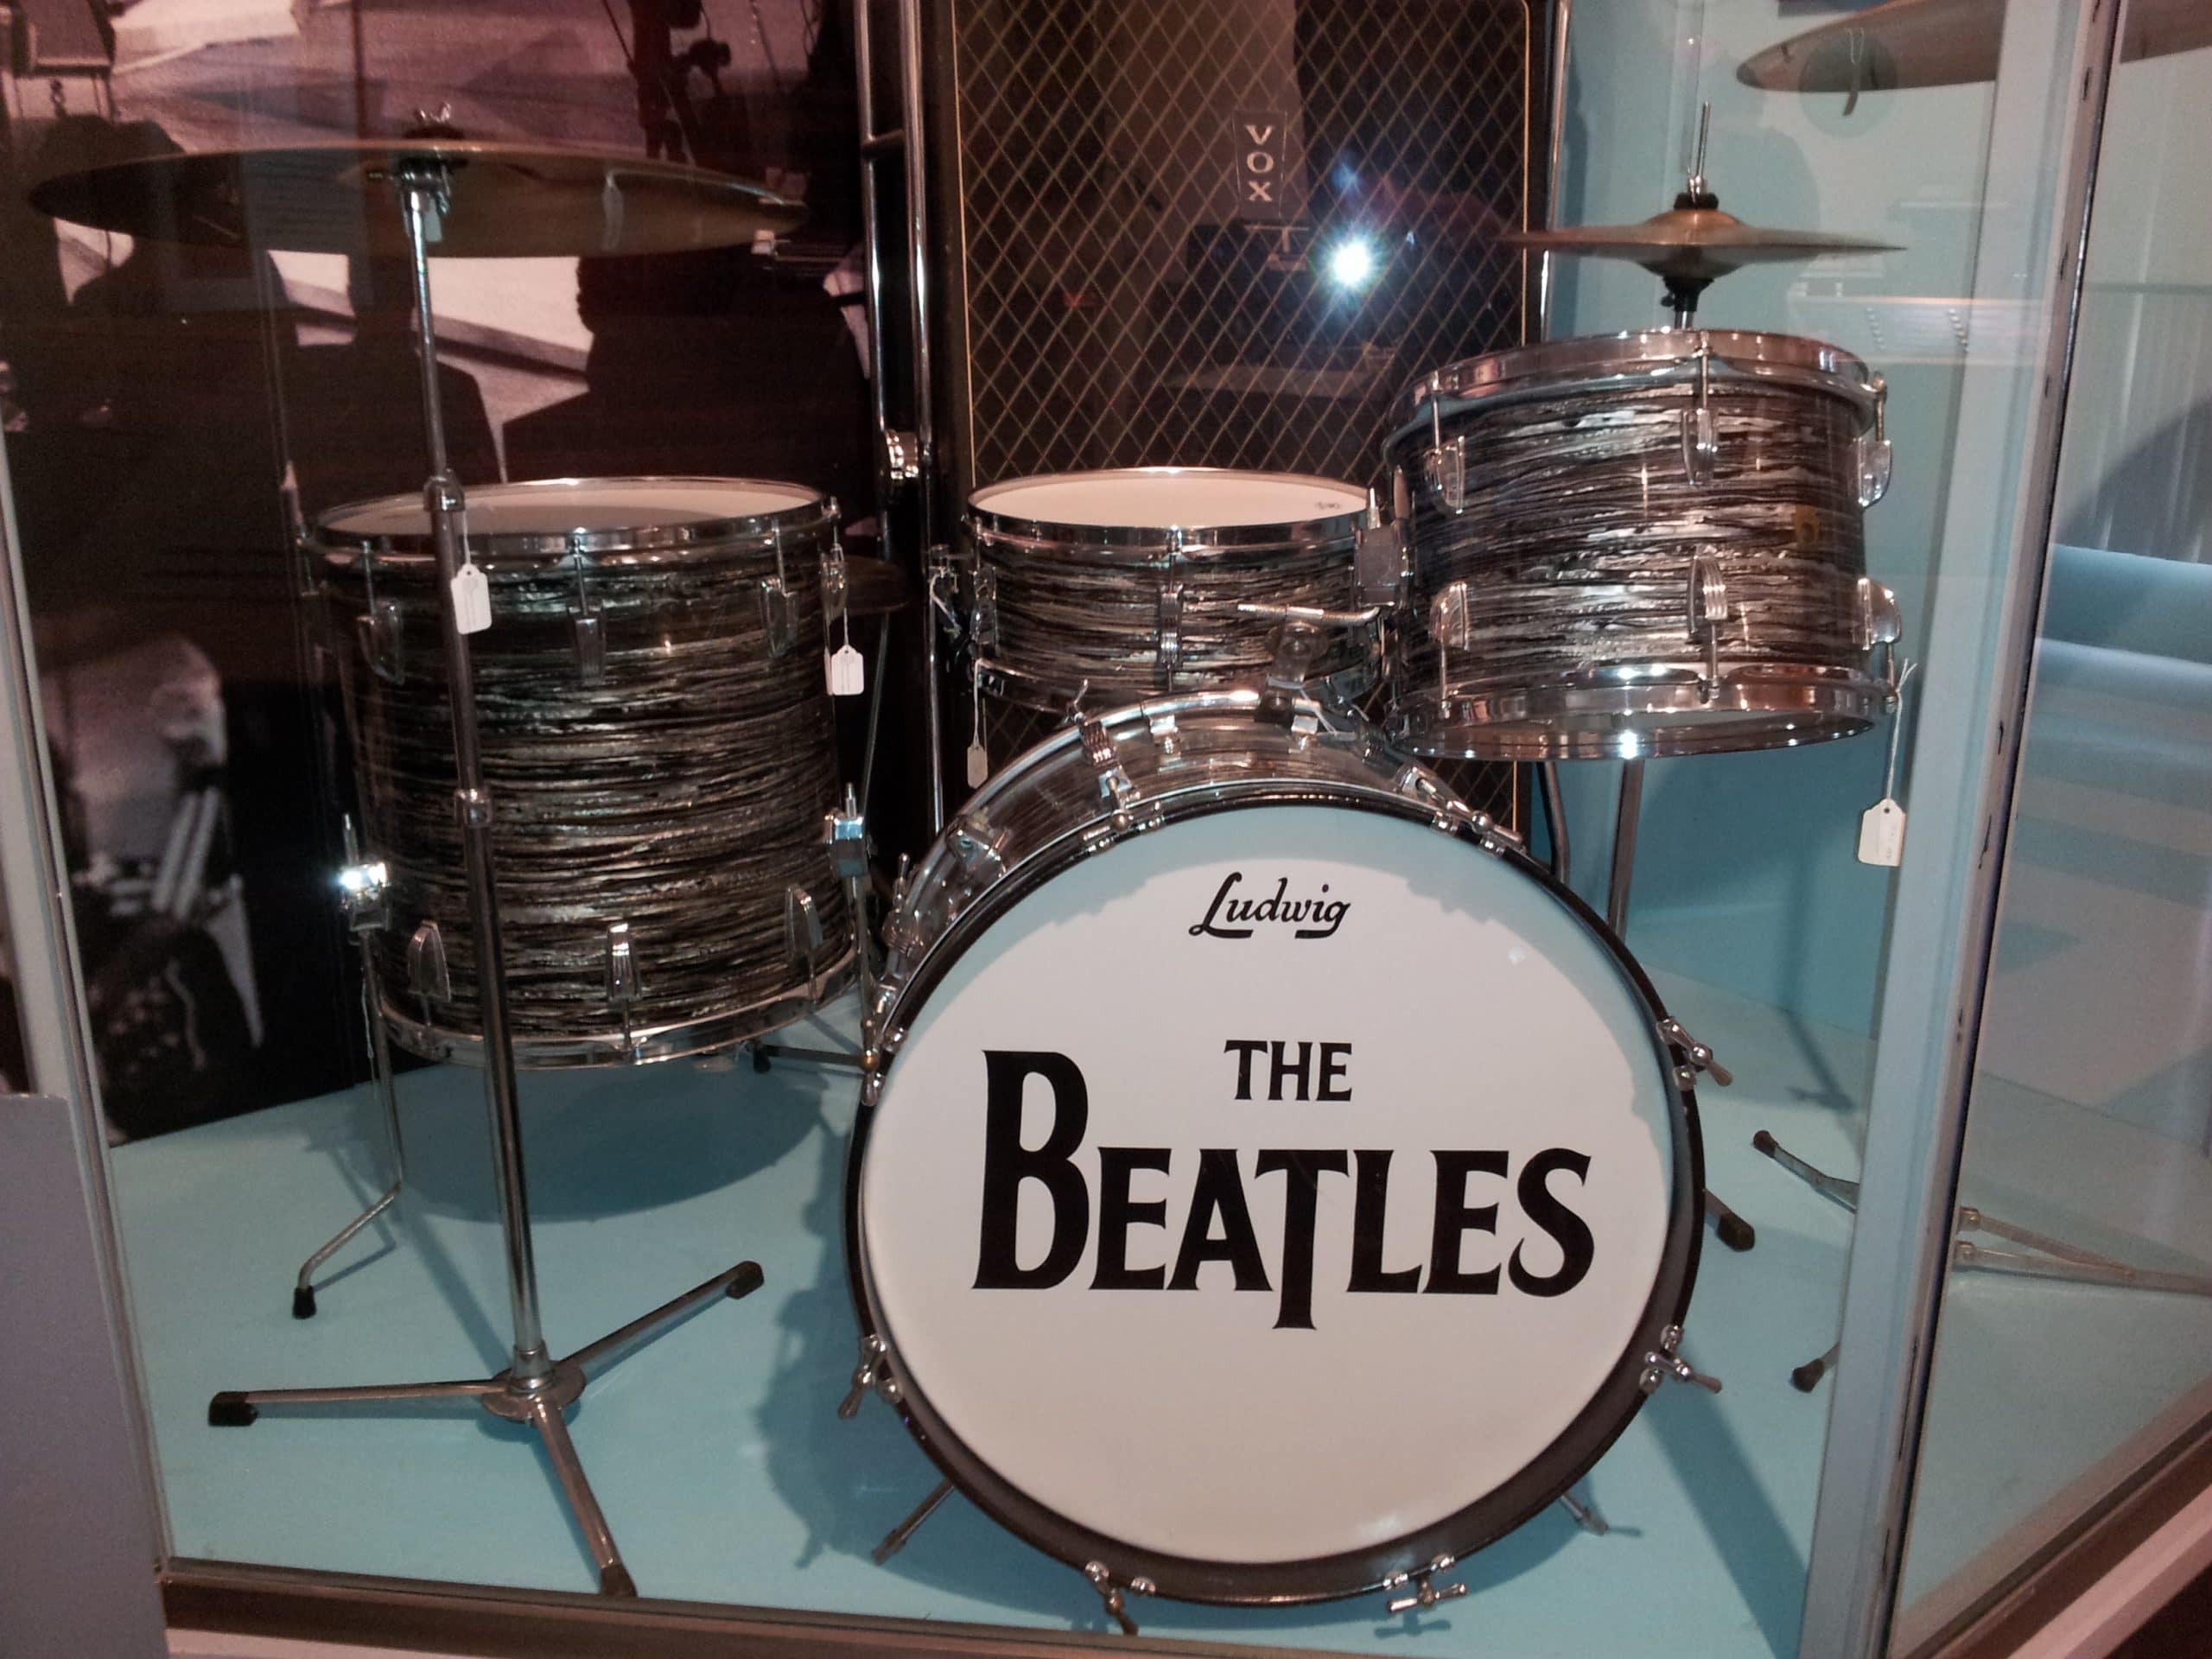 The Beatles Ludwig Drum Set